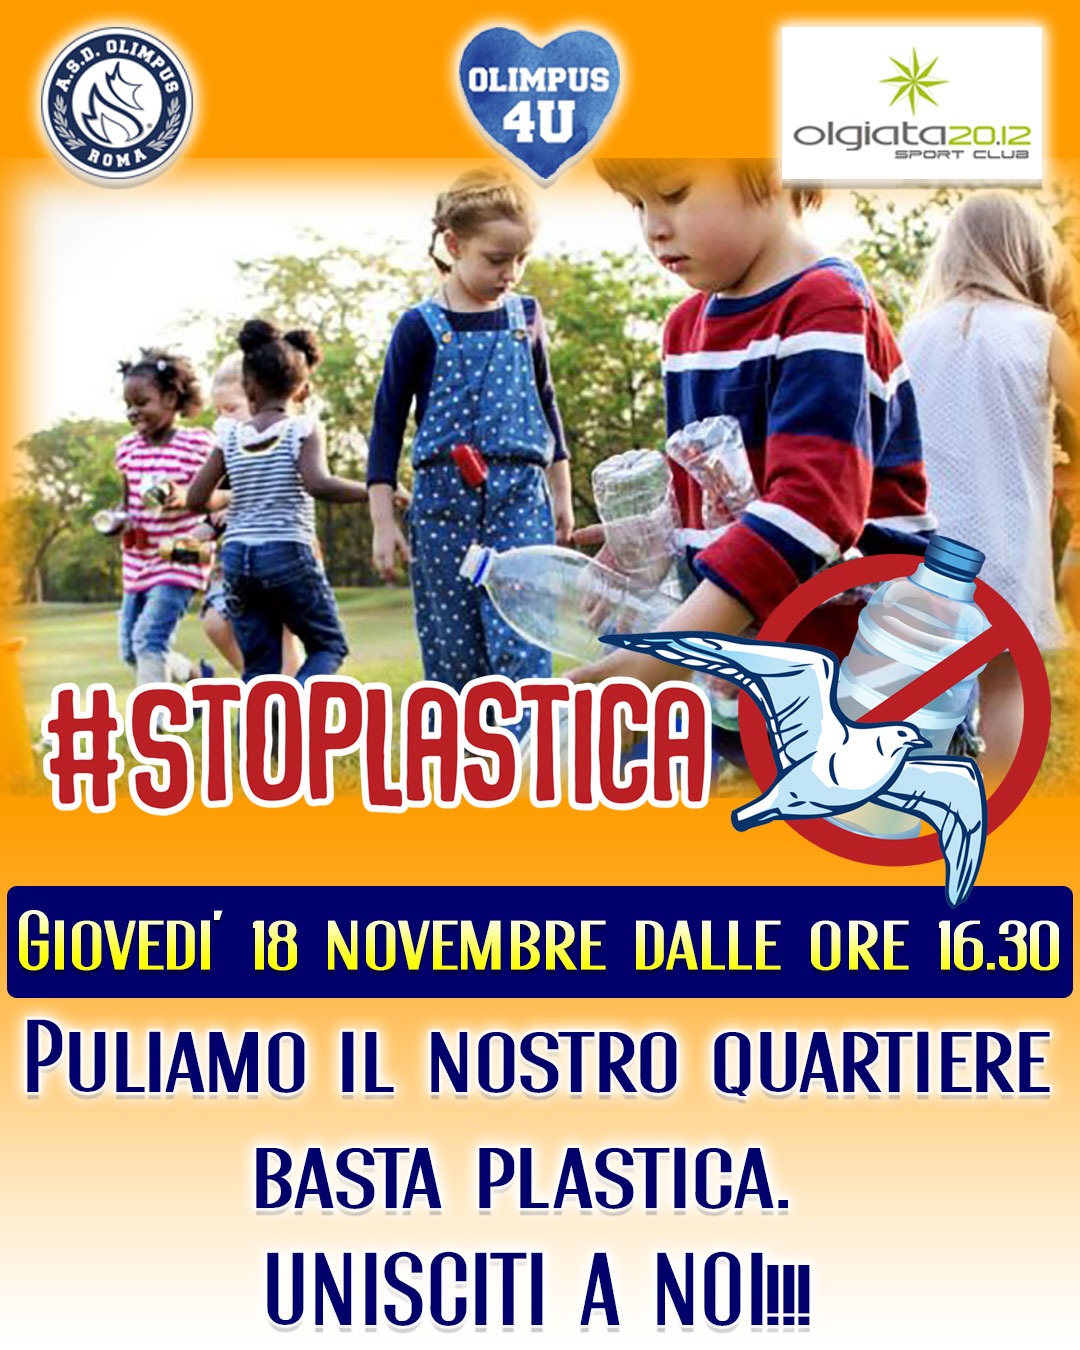 La Scuola calcio Olimpus Roma dice #stoplastica 